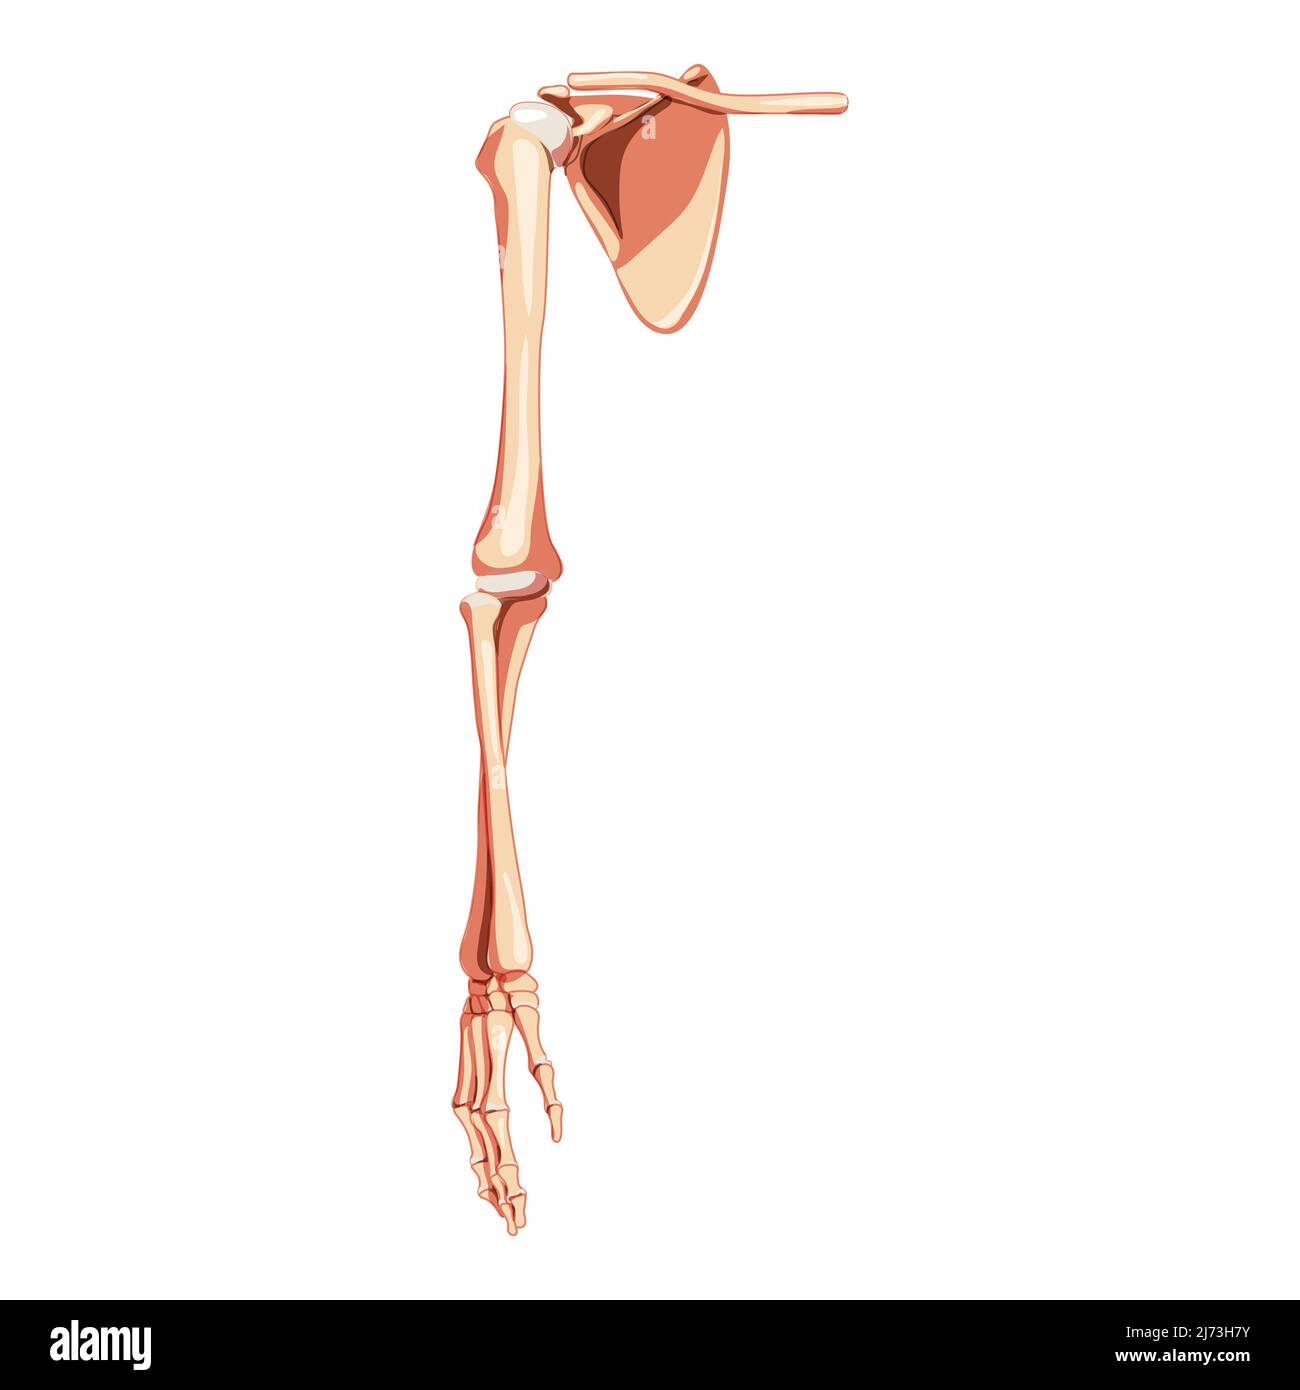 Braccio dell'arto superiore con cintura di spalla scheletro Vista ventrale anteriore umana. Clavicola anatomicamente corretta, scapola, avambracci concetto piatto realistico illustrazione vettoriale isolata su sfondo bianco Illustrazione Vettoriale